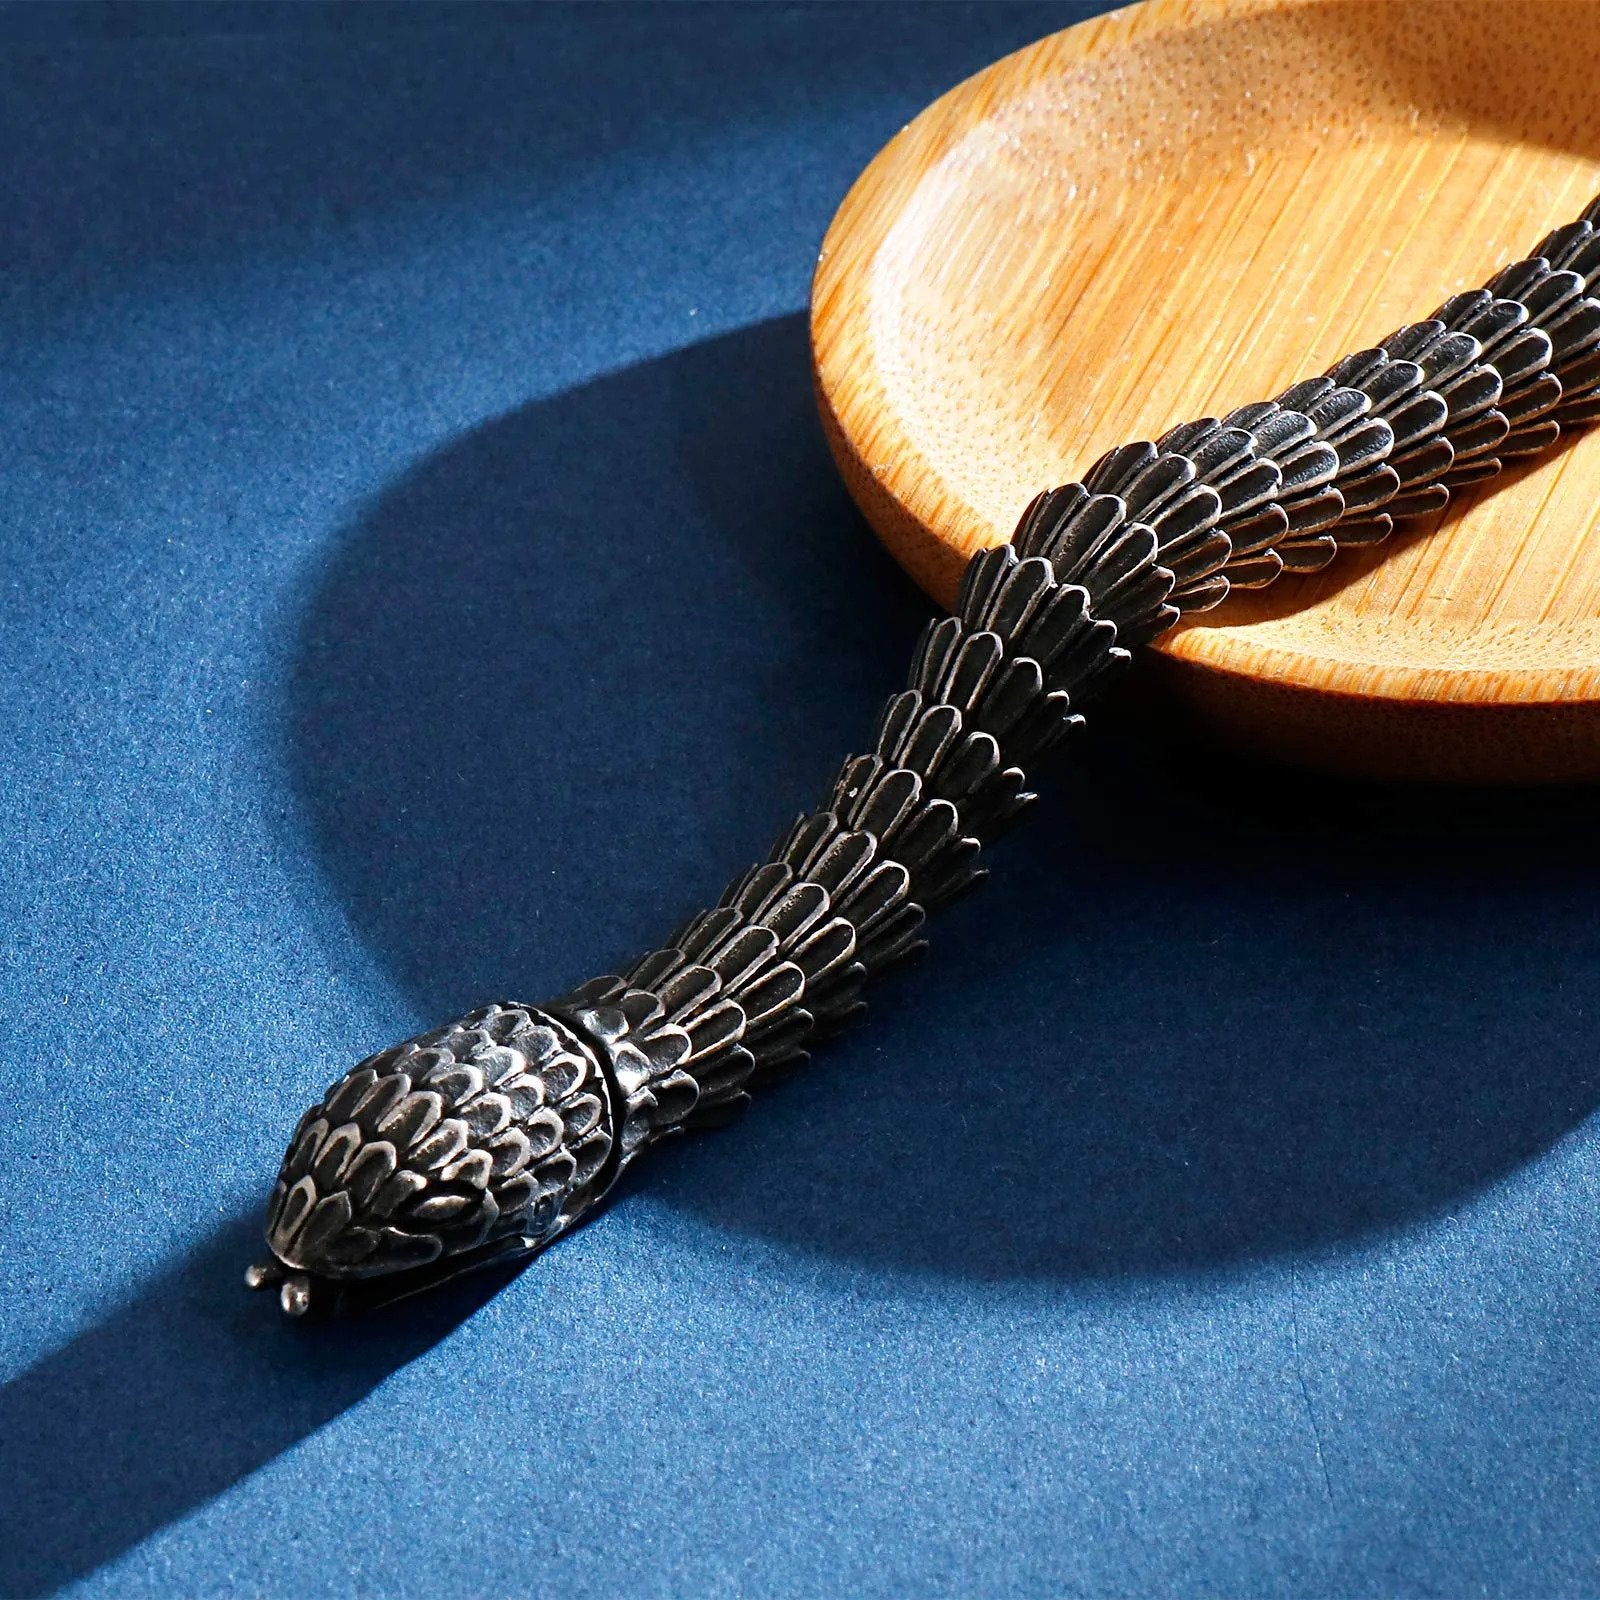 Snake Bracelet SerpentineTextured Metal Slithering Statement